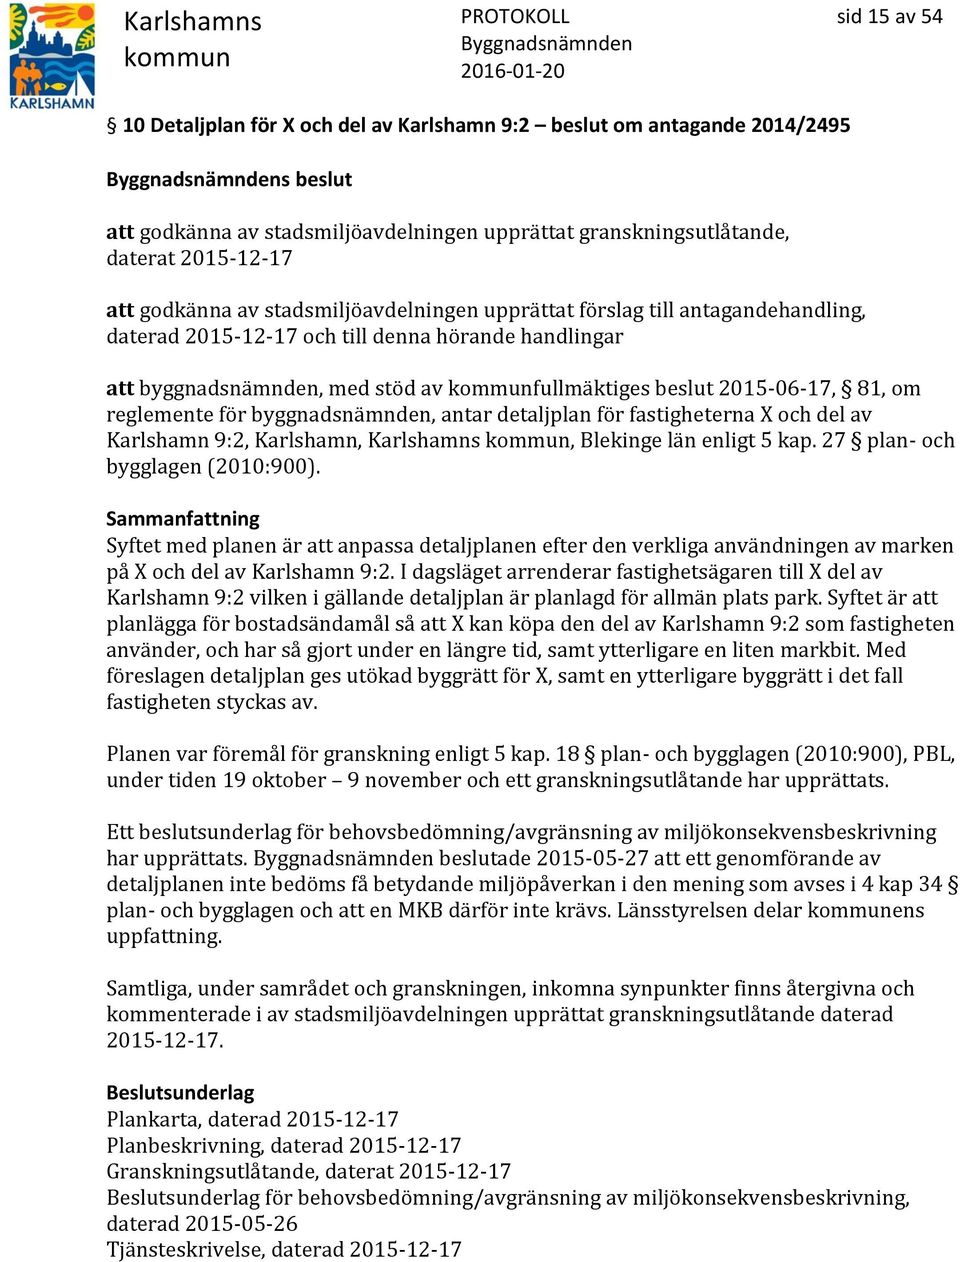 reglemente för byggnadsnämnden, antar detaljplan för fastigheterna X och del av Karlshamn 9:2, Karlshamn, Karlshamns, Blekinge län enligt 5 kap. 27 plan- och bygglagen (2010:900).